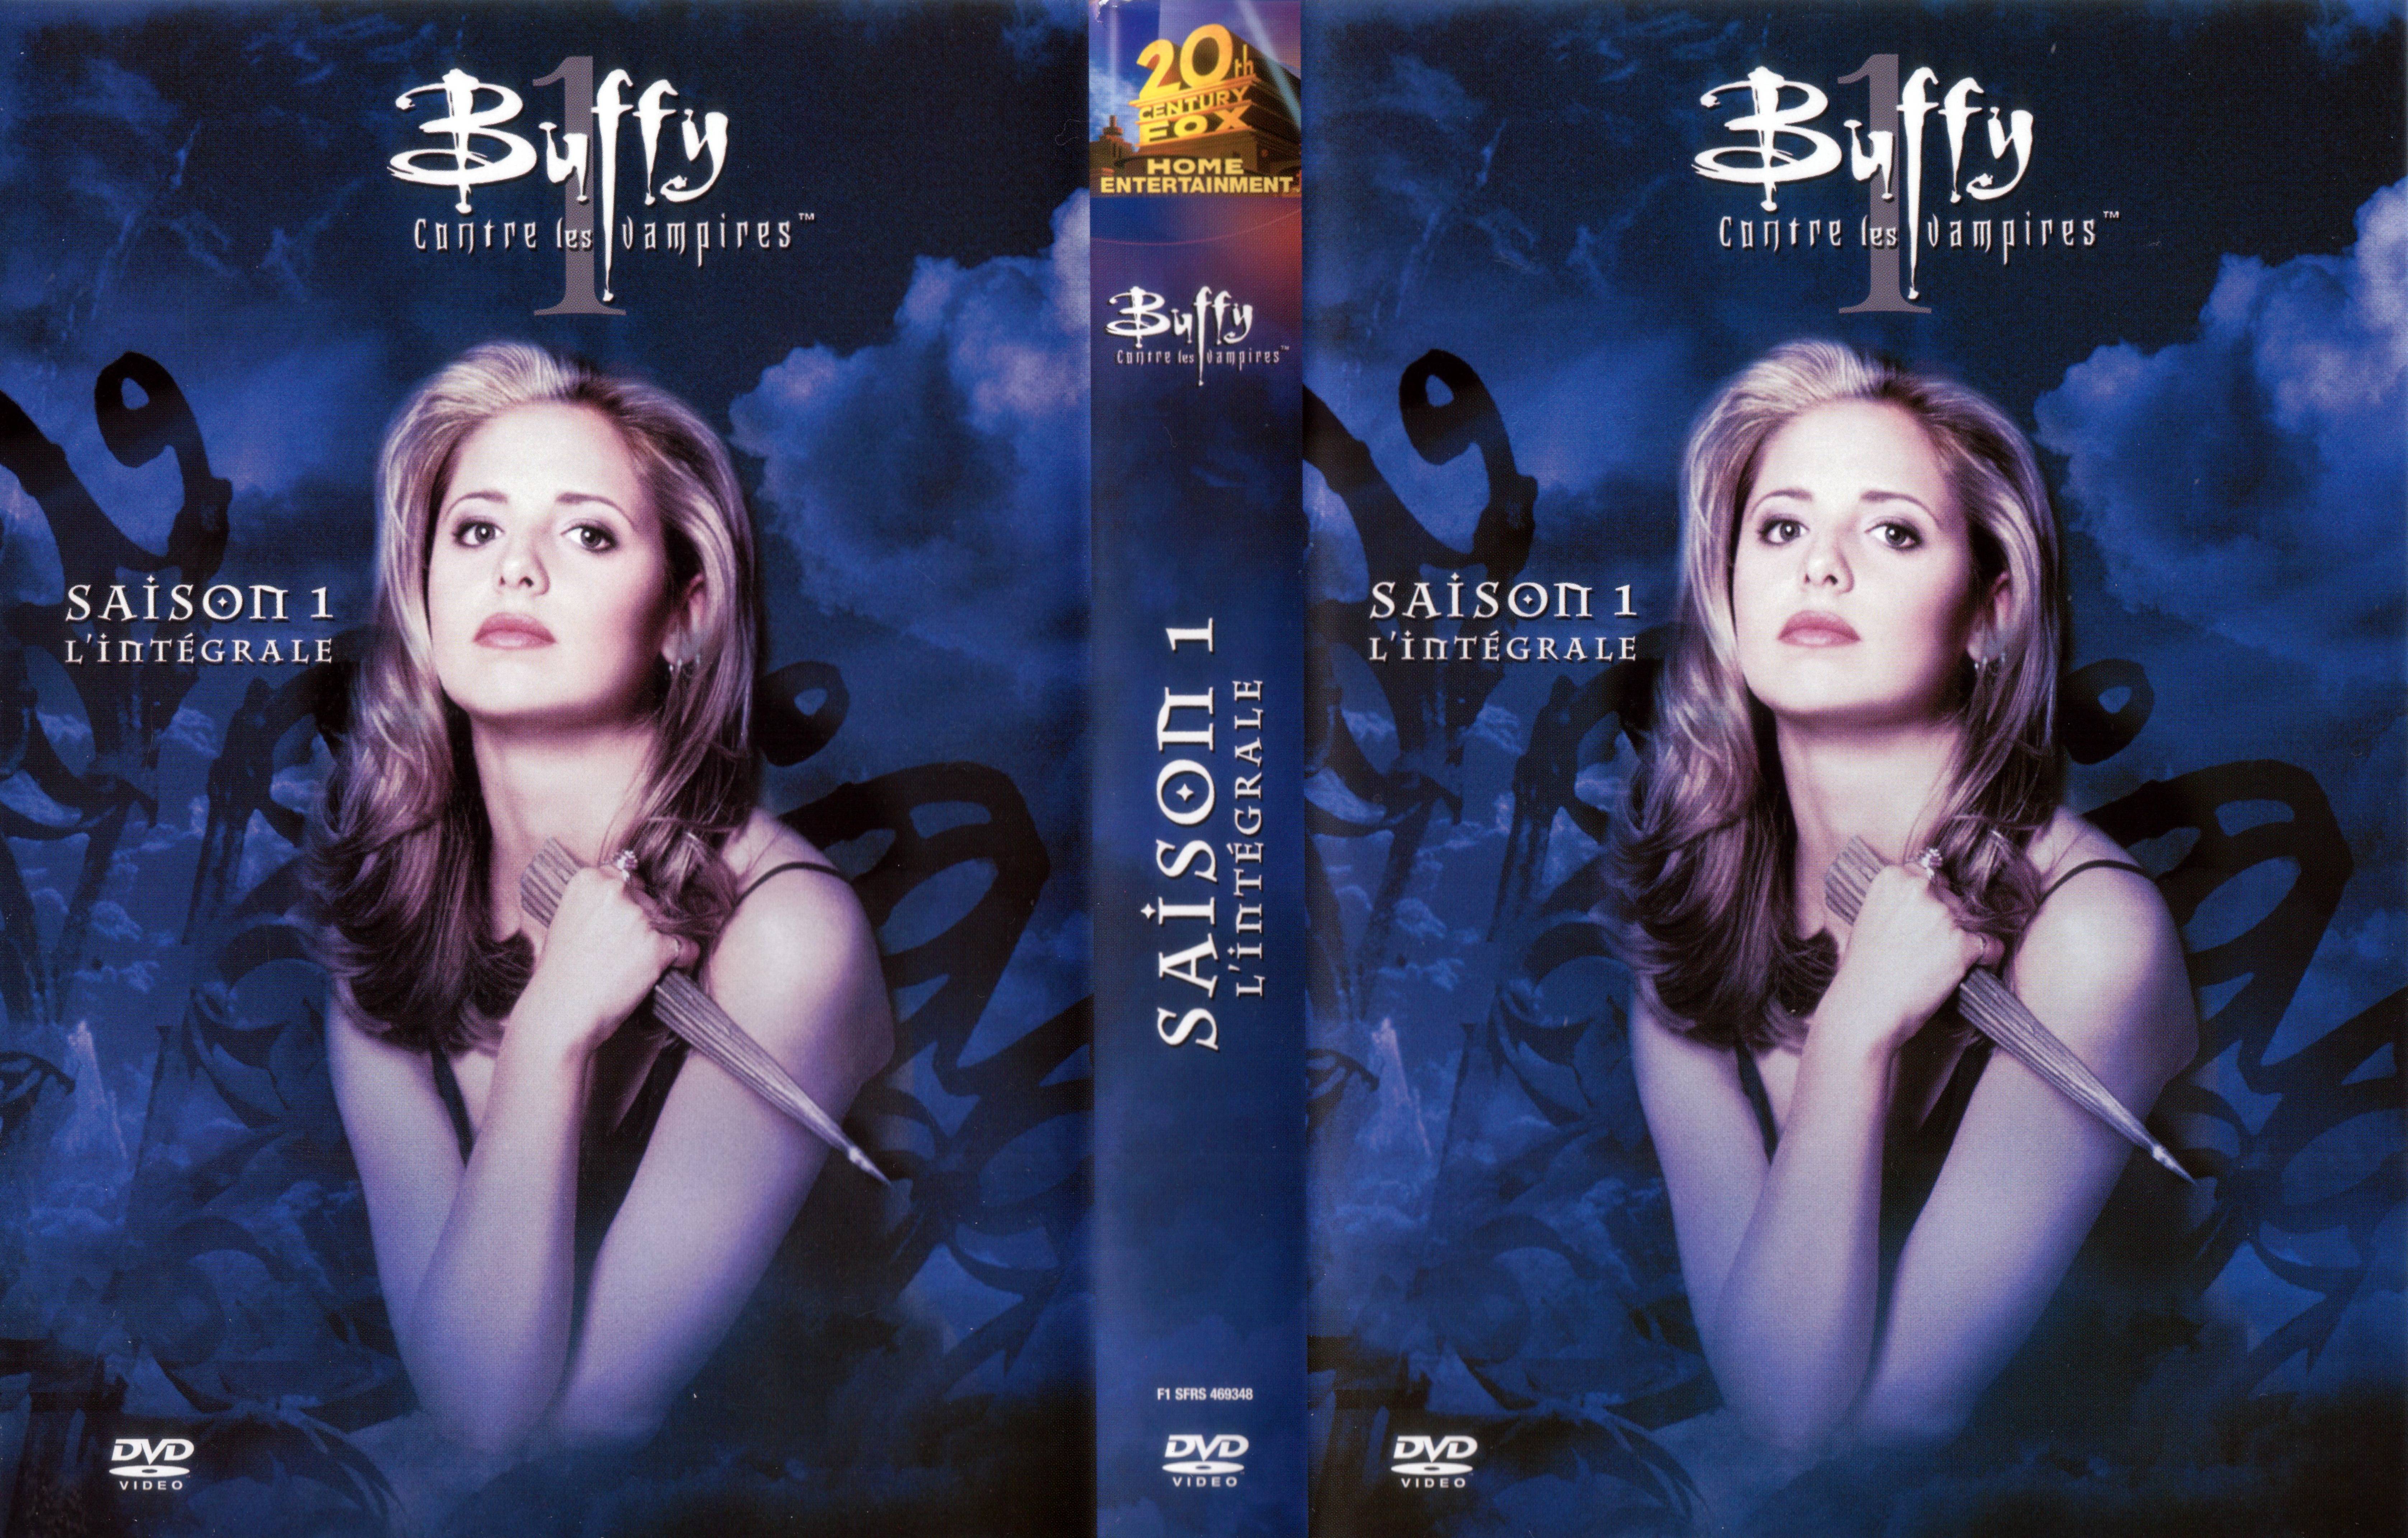 Jaquette DVD Buffy contre les vampires Saison 1 COFFRET